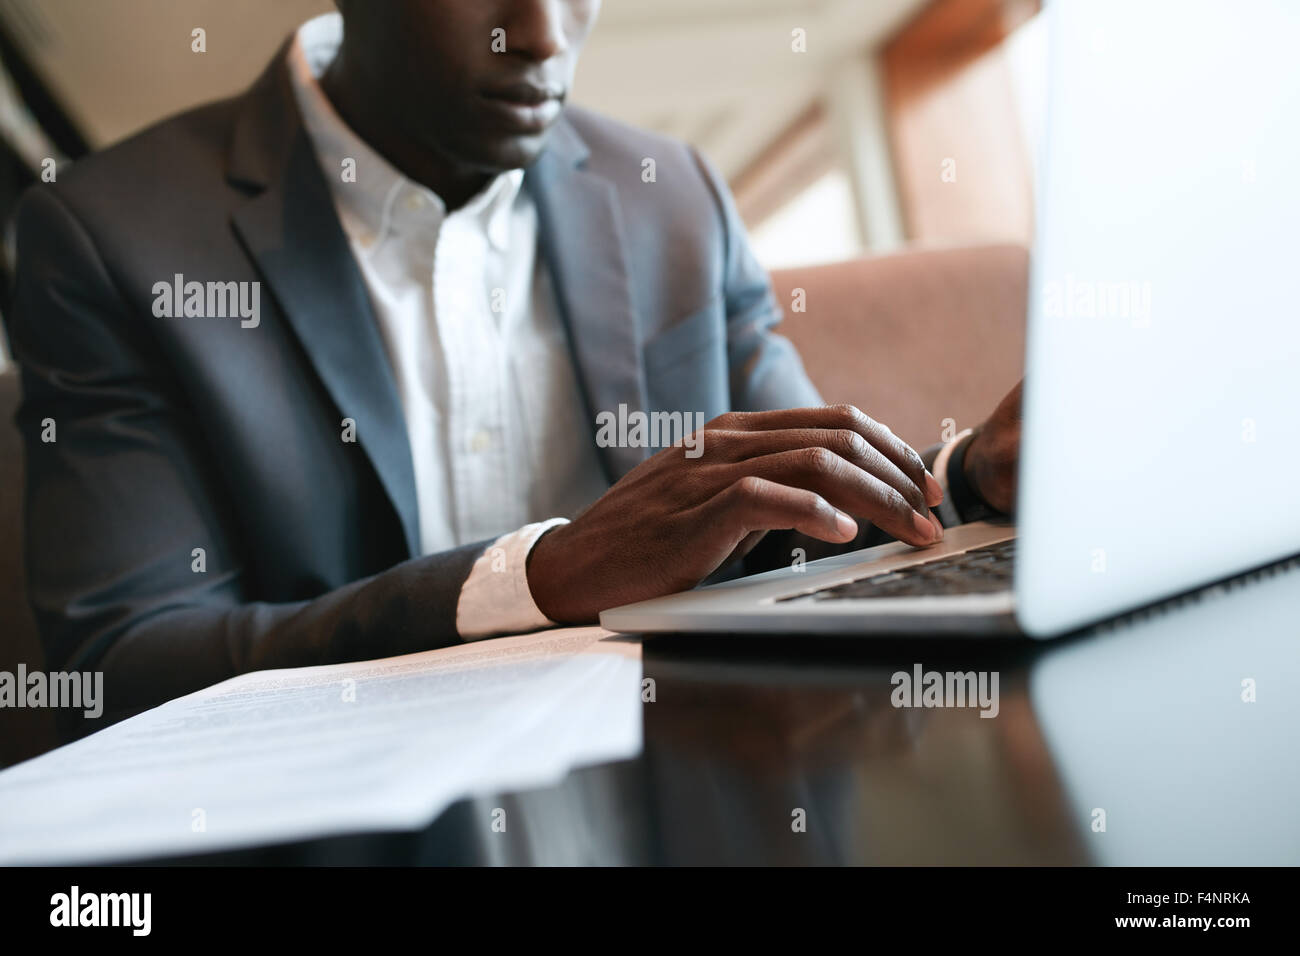 Immagine ravvicinata di mani maschio digitando sulla tastiera del notebook. Imprenditore africano lavorando sul computer portatile presso il cafe. Foto Stock